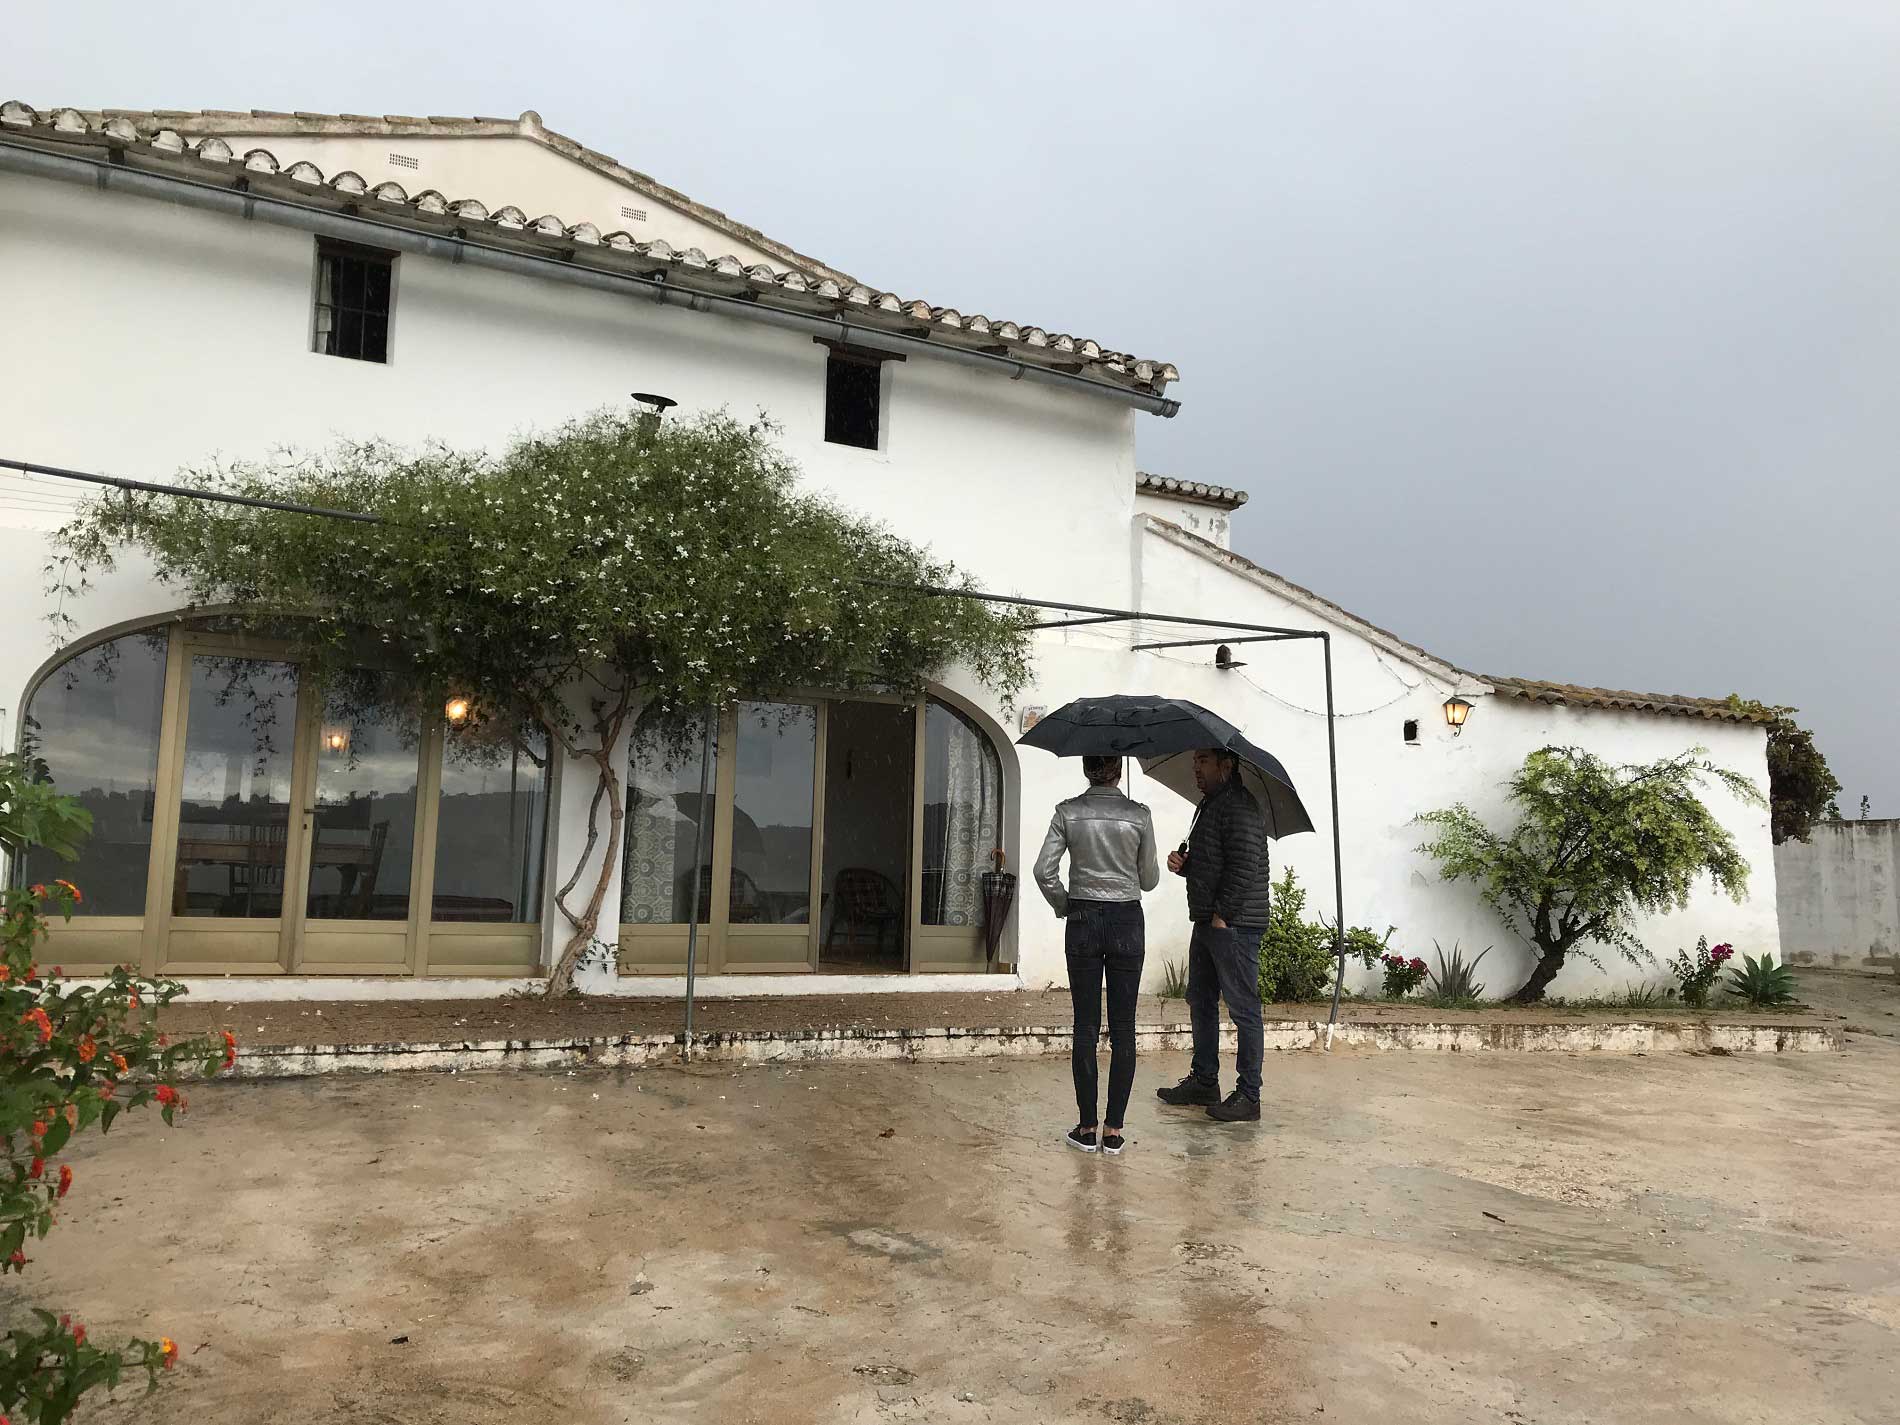 spaanse vakantiehuis bekijken in de regen